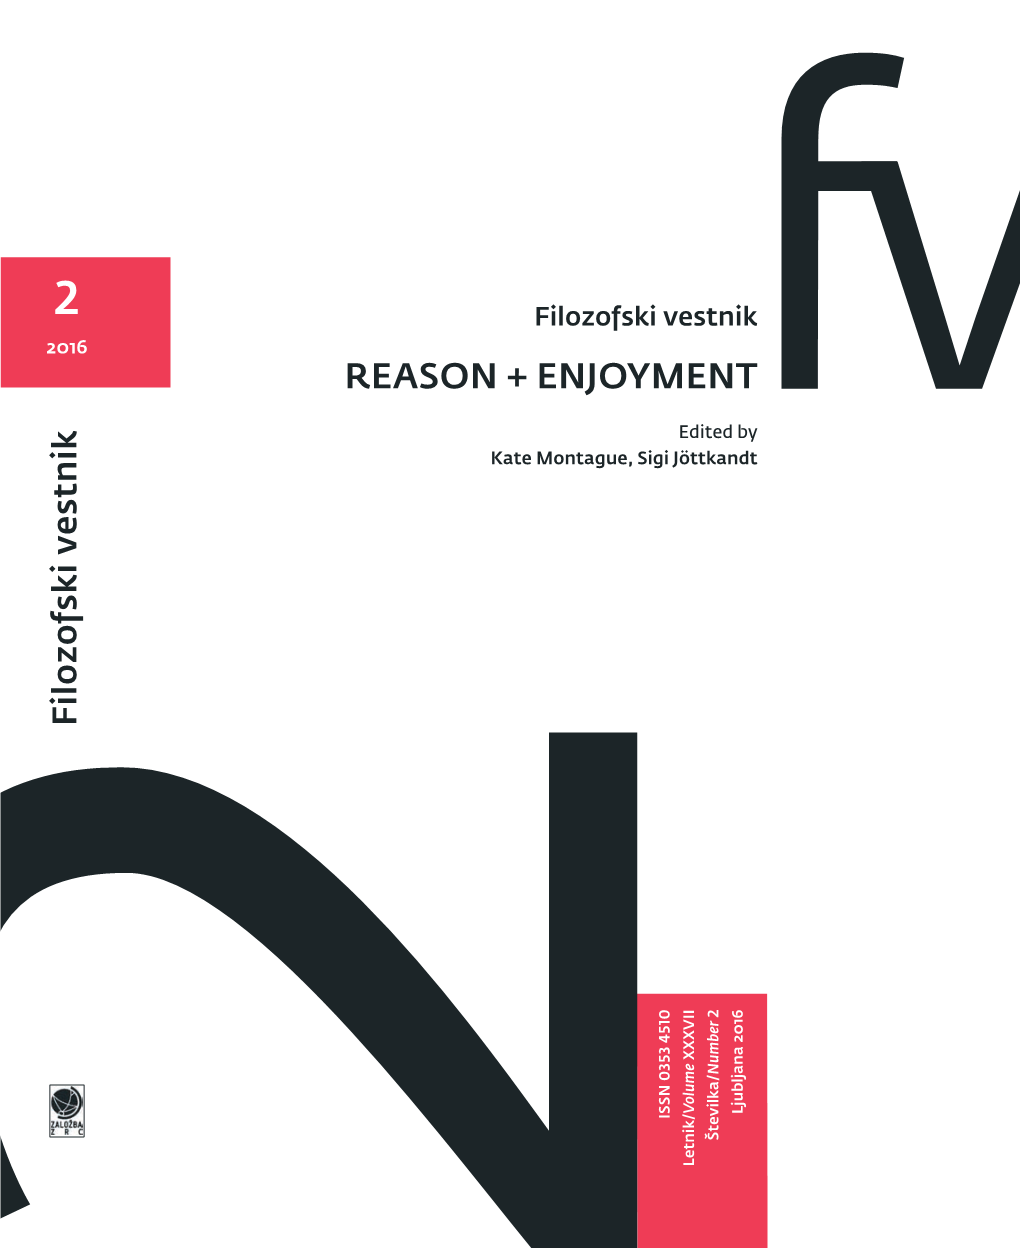 REASON + ENJOYMENT Reason + Enjoyment Ernesto Laclau † (Essex), Steven Lukes (New York), Chantal Moufe (London), Zgodovine Flozofje in Teoretske Psihoanalize